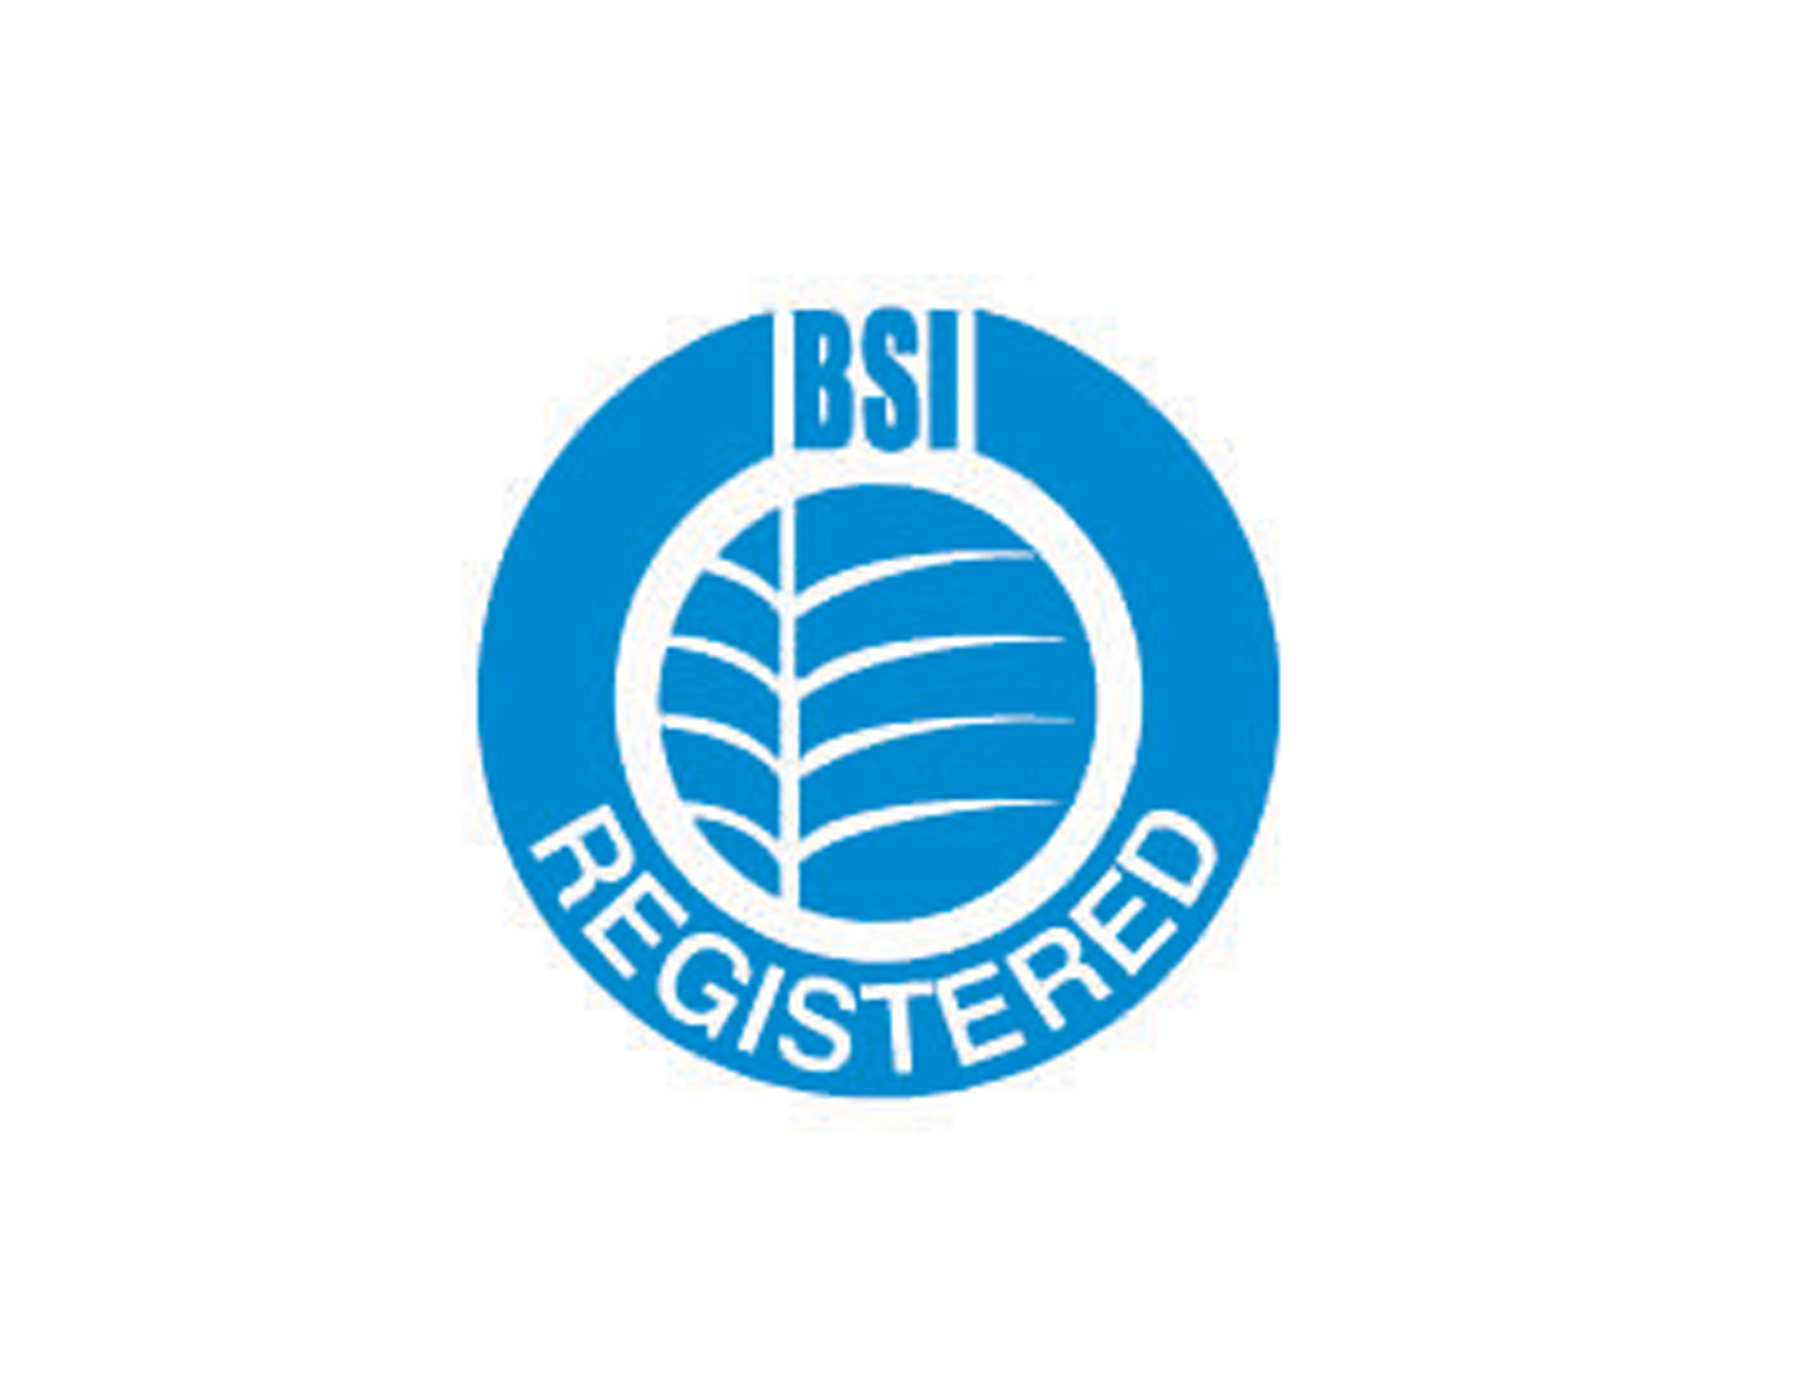 REGISTERED化工企业商标设计采用蓝色圆形结构，顶部是BSI简称，中间是农作物的抽象图形